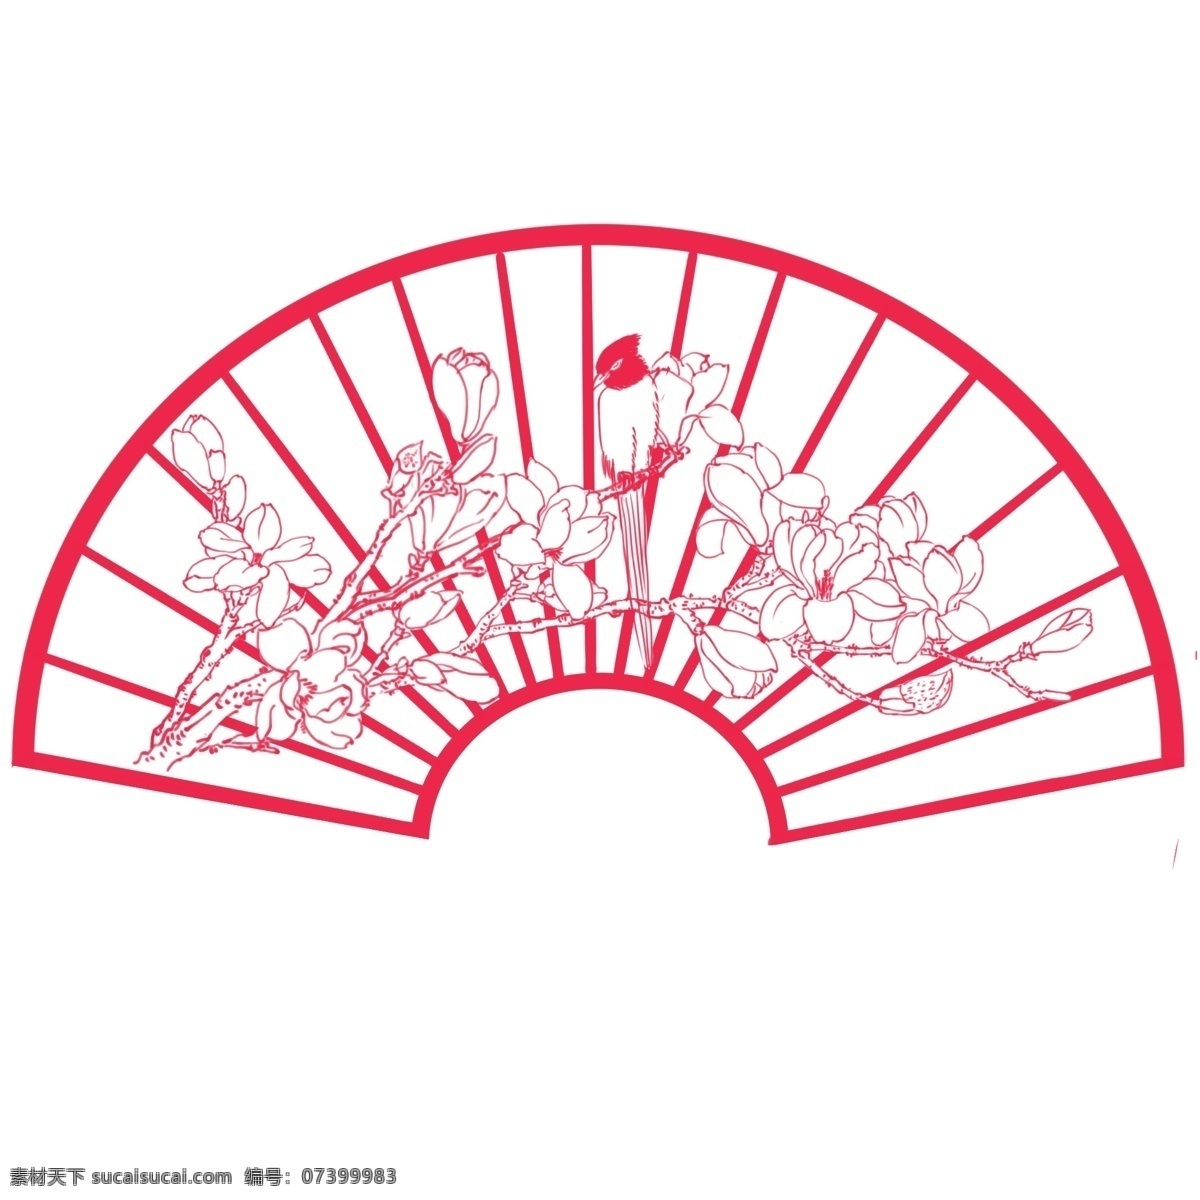 卡通 手绘 剪纸 花鸟 卡通手绘 漂亮的 红色的 中国红扇面 玉兰花 侧头俯视花的 鸟儿 树枝